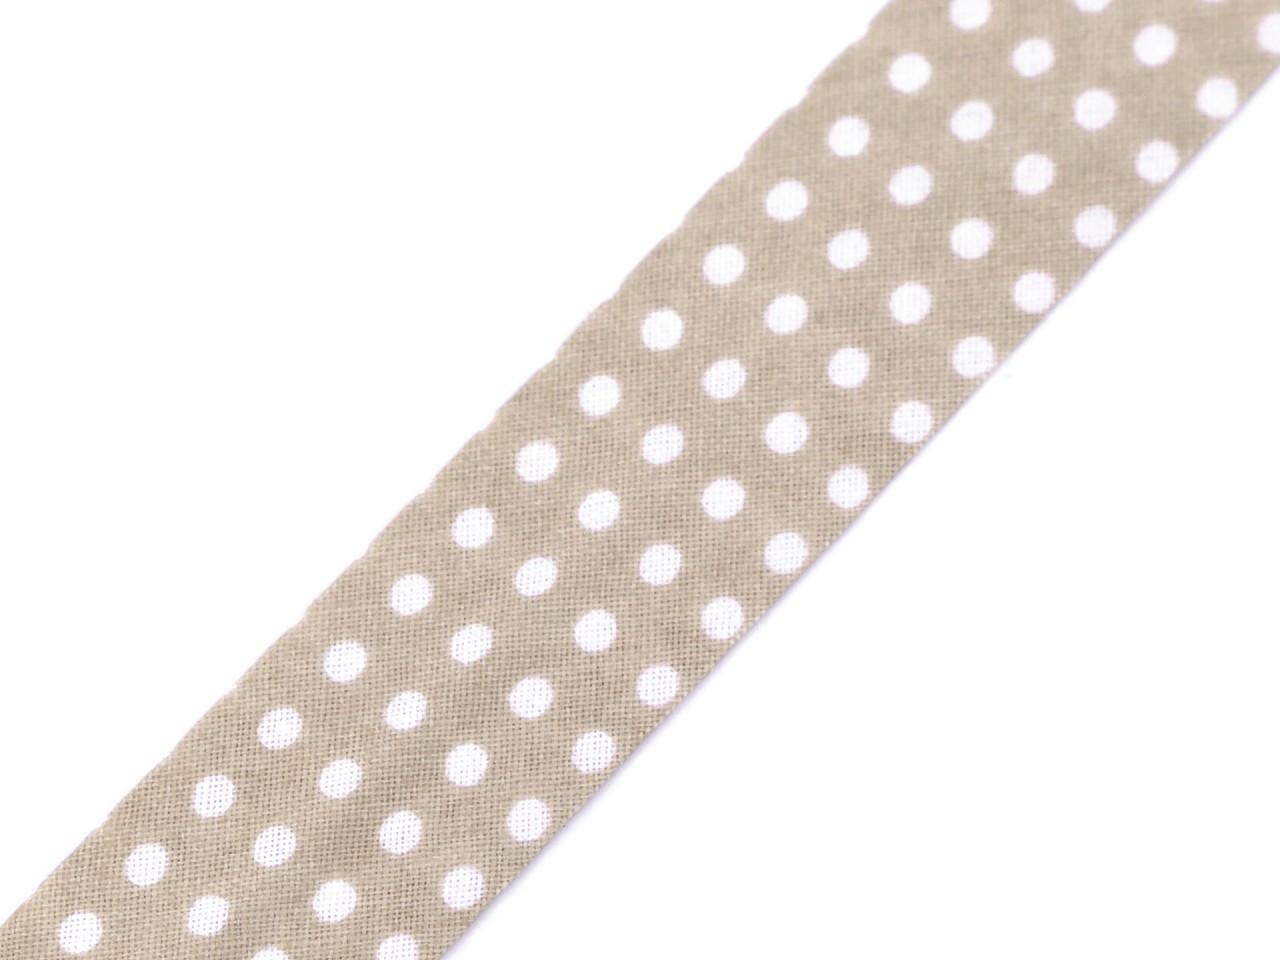 Šikmý proužek bavlněný puntík, káro, hvězdy, jemný proužek šíře 20 mm zažehlený, barva 380798/3 béžová puntíky